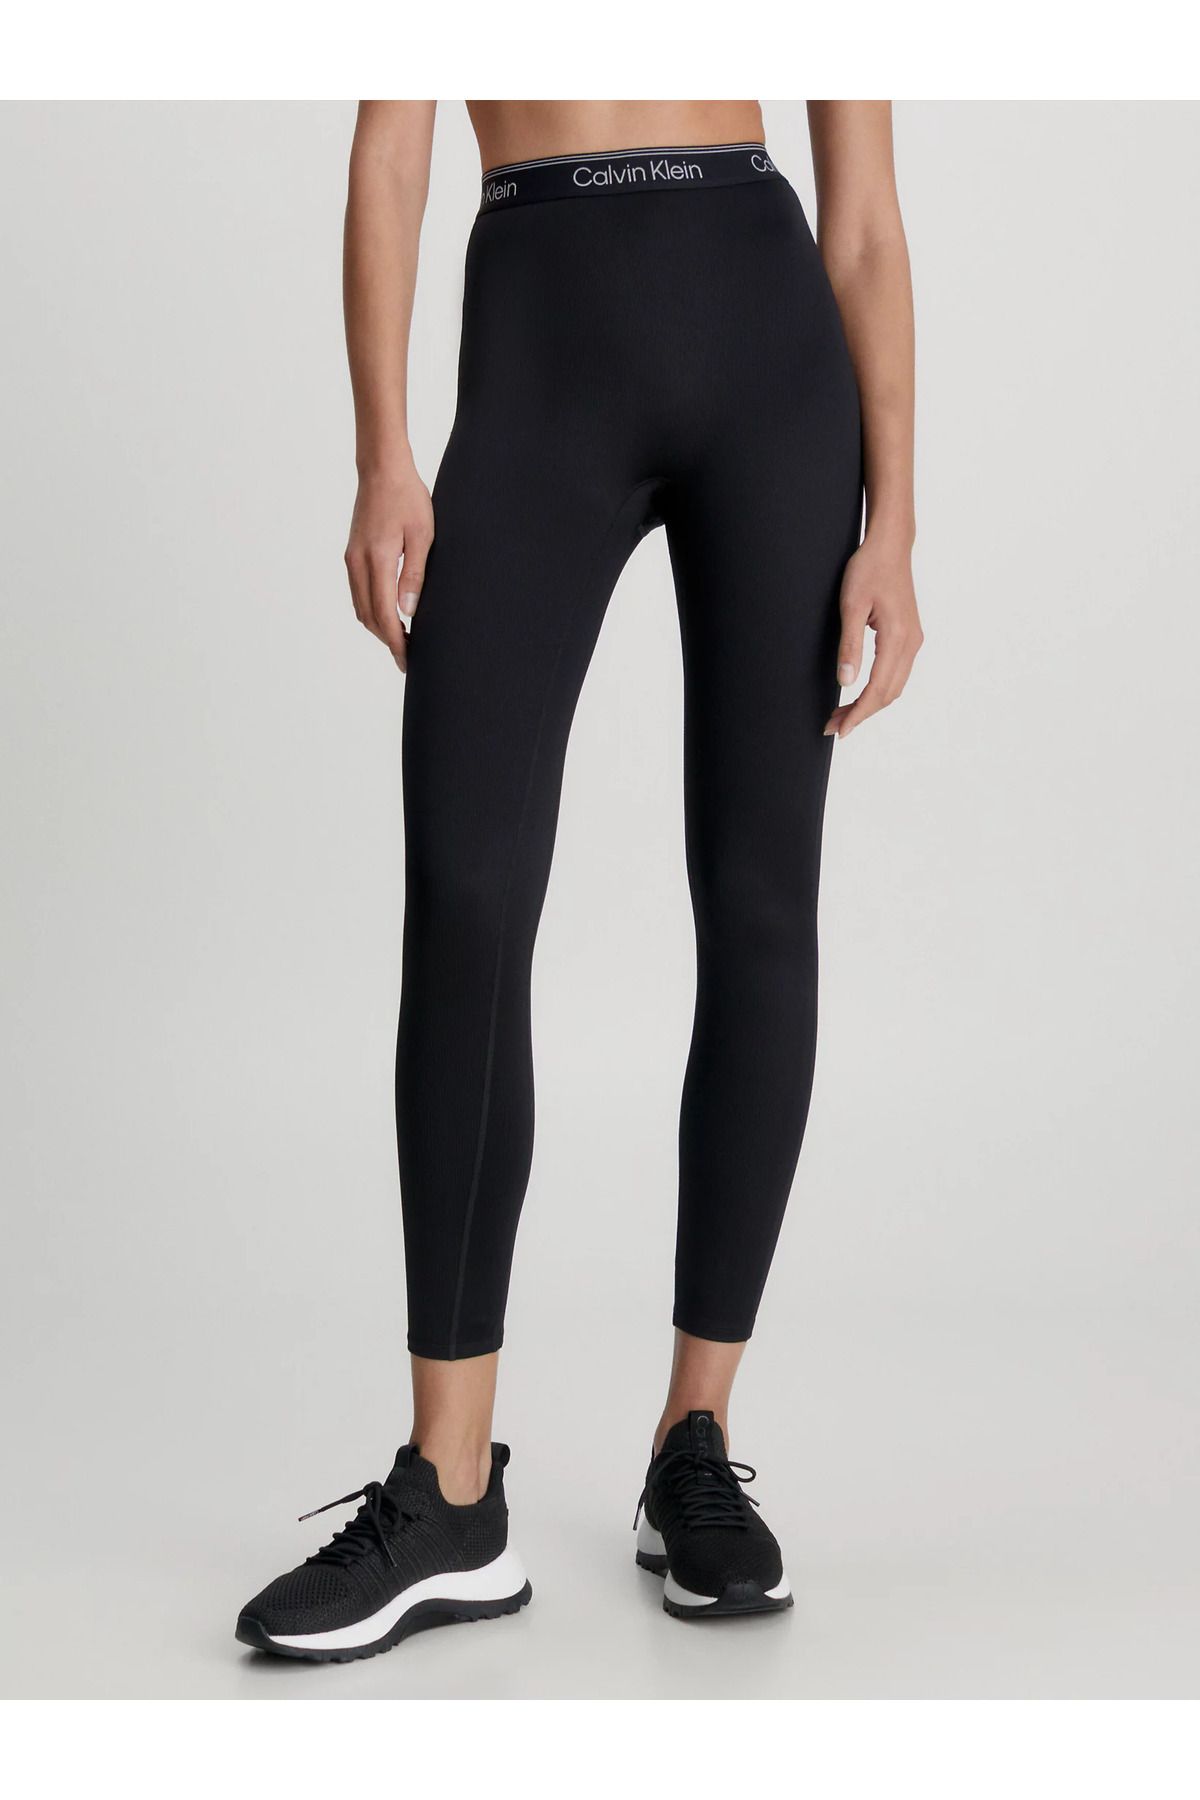 Calvin Klein Women's Signed Elastic Waistband High Waisted Flexible Fabric  Ease of Movement Black Leggings - Trendyol